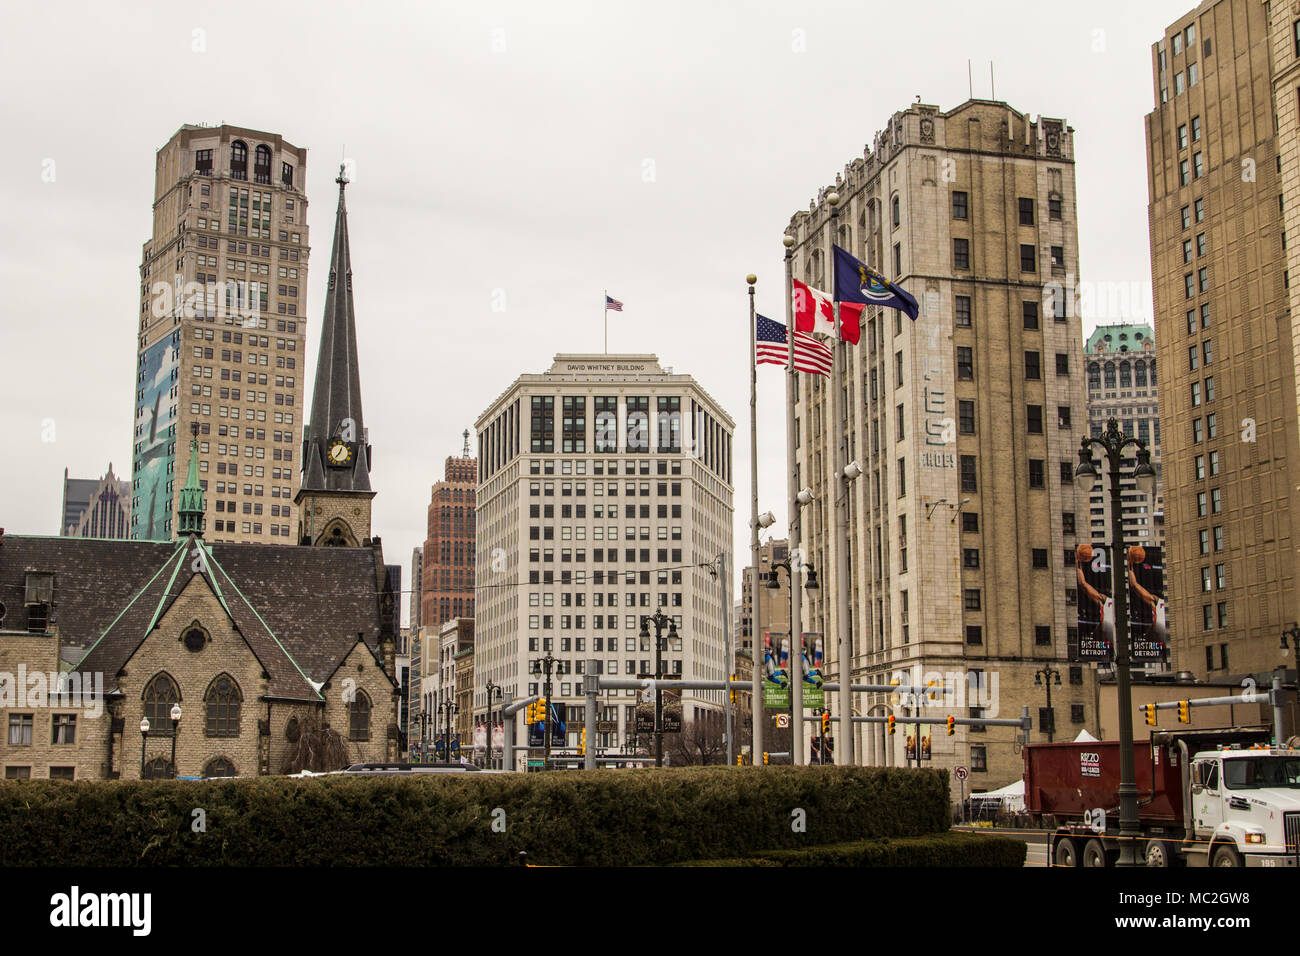 Detroit, Michigan, EE.UU. - Marzo 28, 2018: la silueta de la ciudad y las calles de la ciudad de la histórica Gran Circo parque del barrio del centro de Detroit, Michigan. Foto de stock